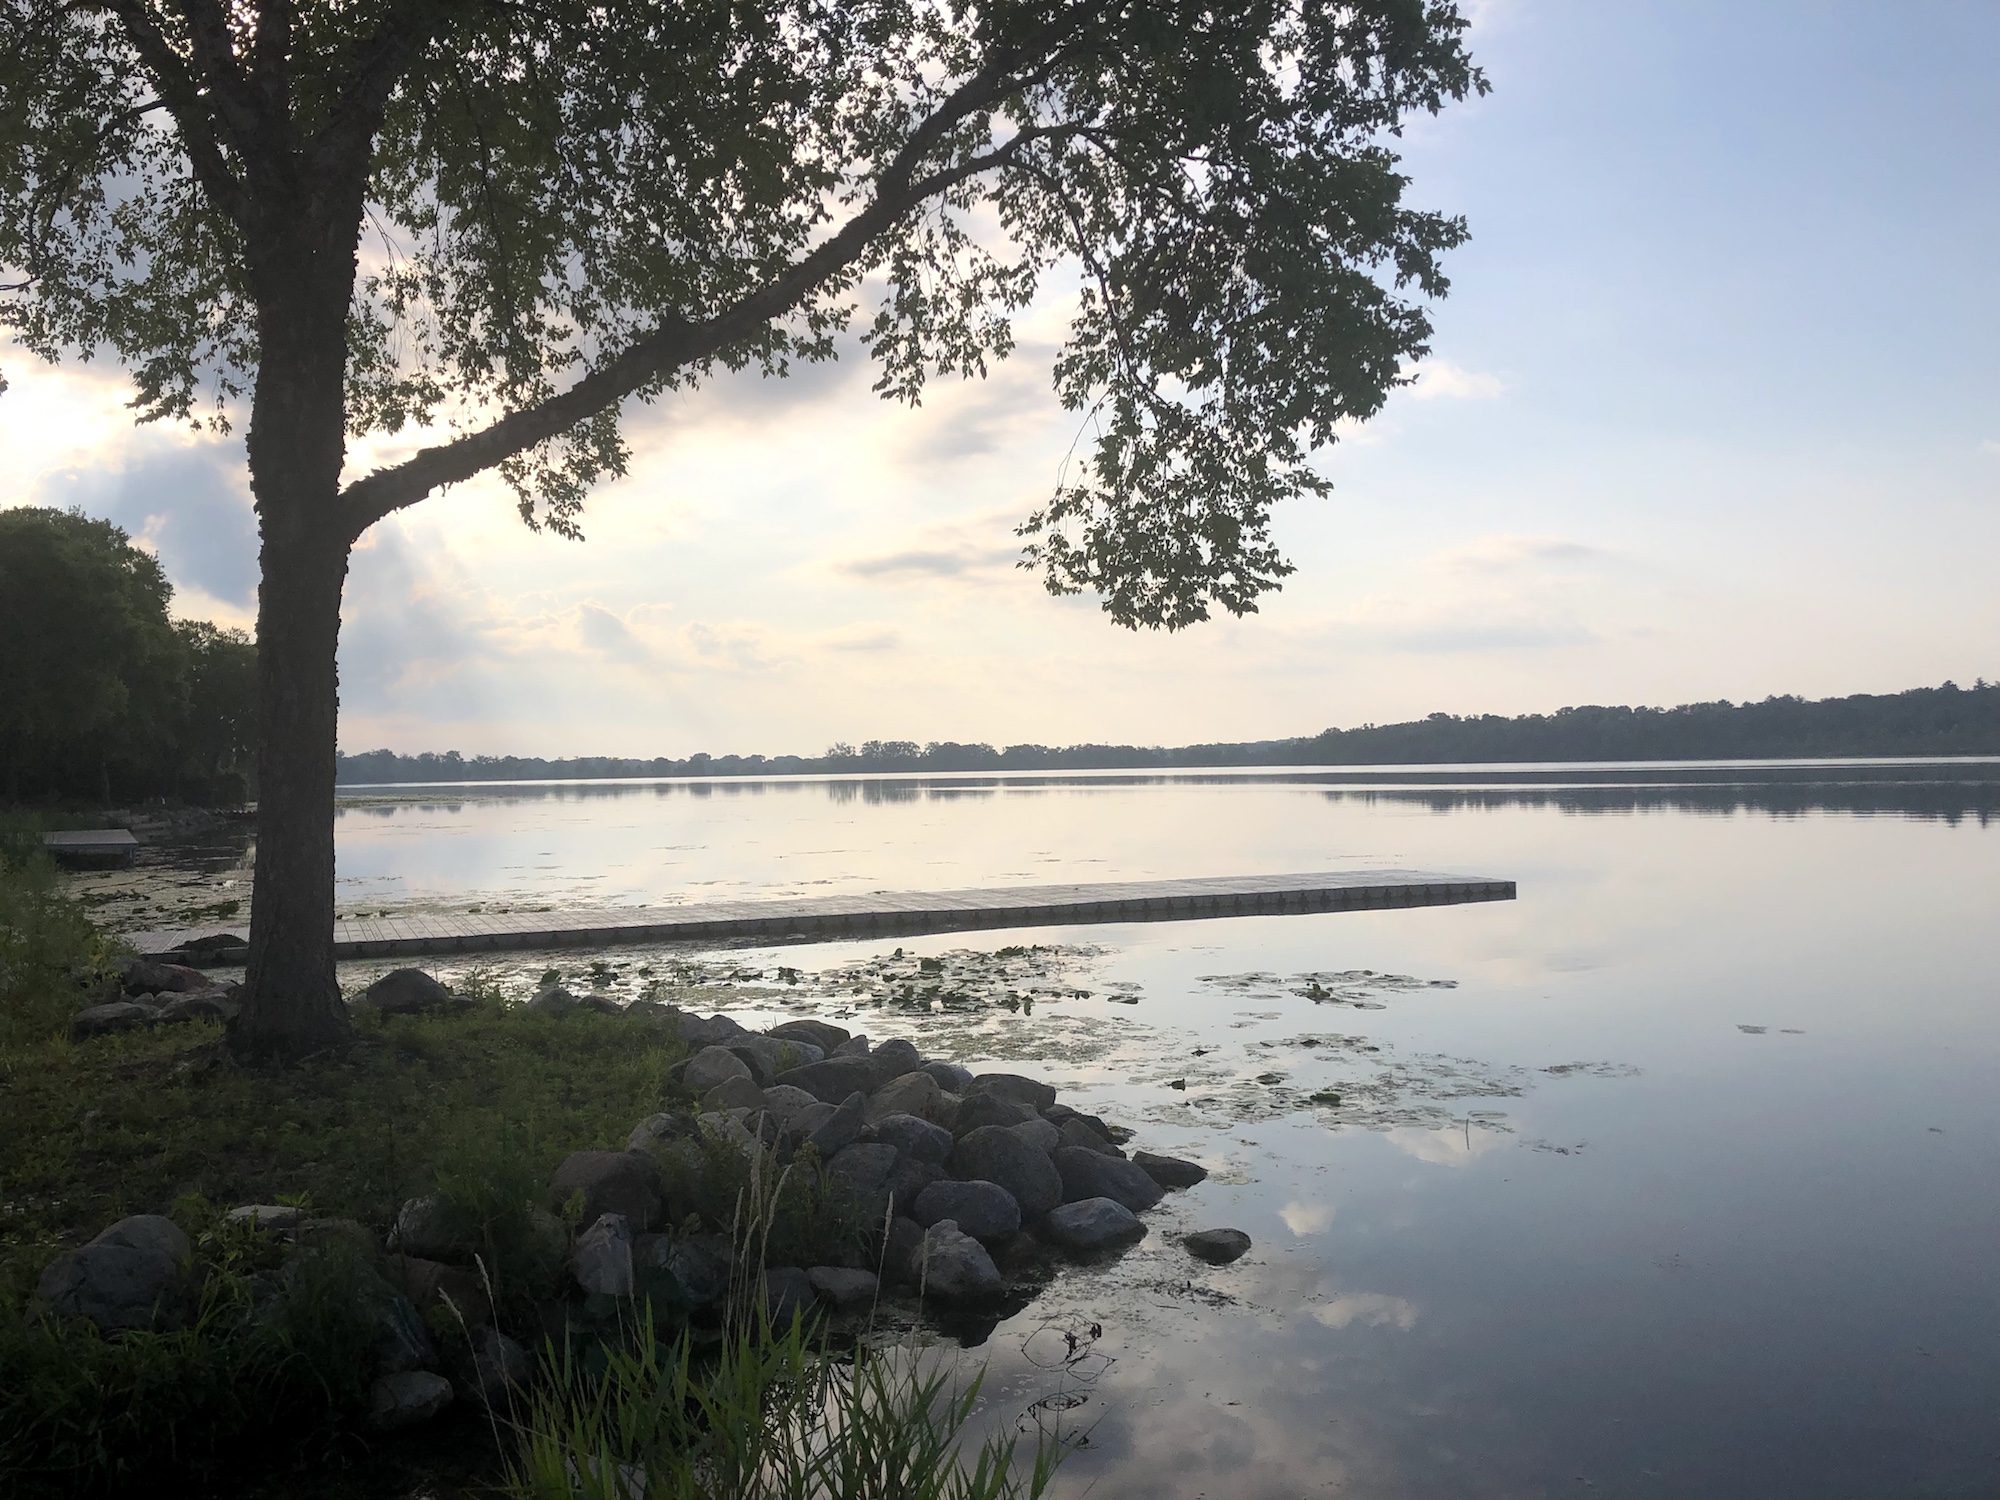 Lake Wingra on July 28, 2019.